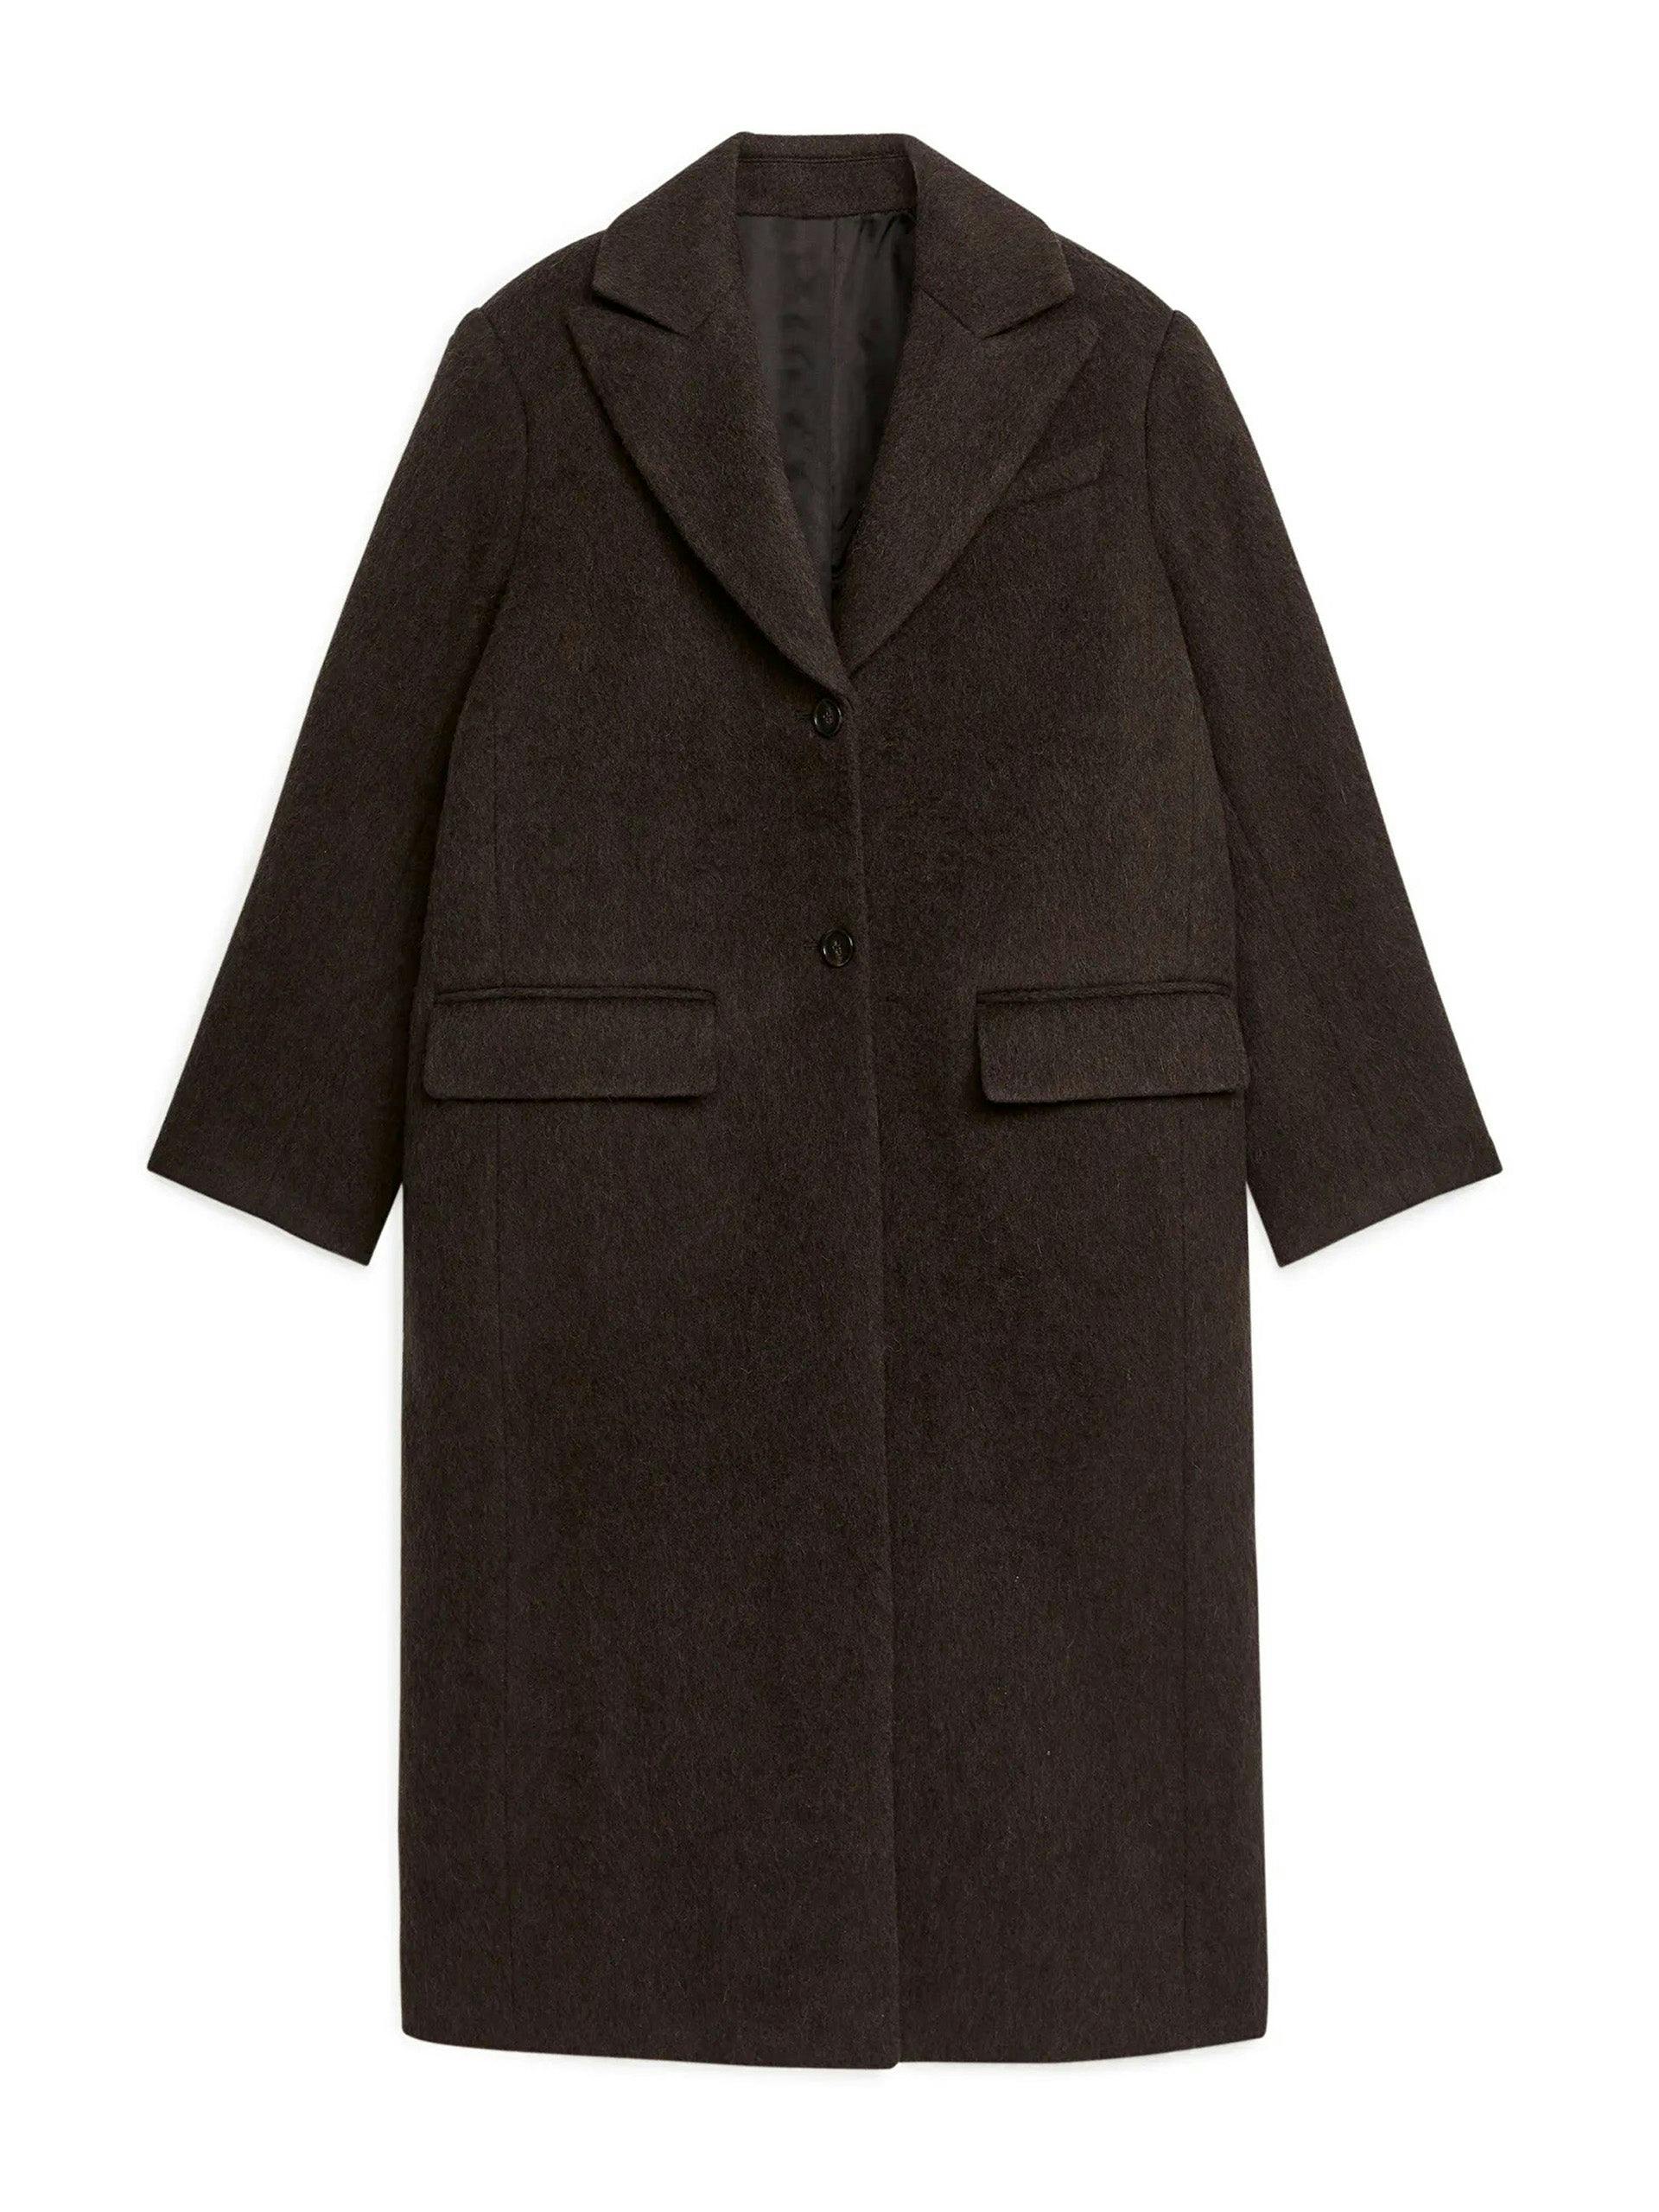 Brown wool blend coat